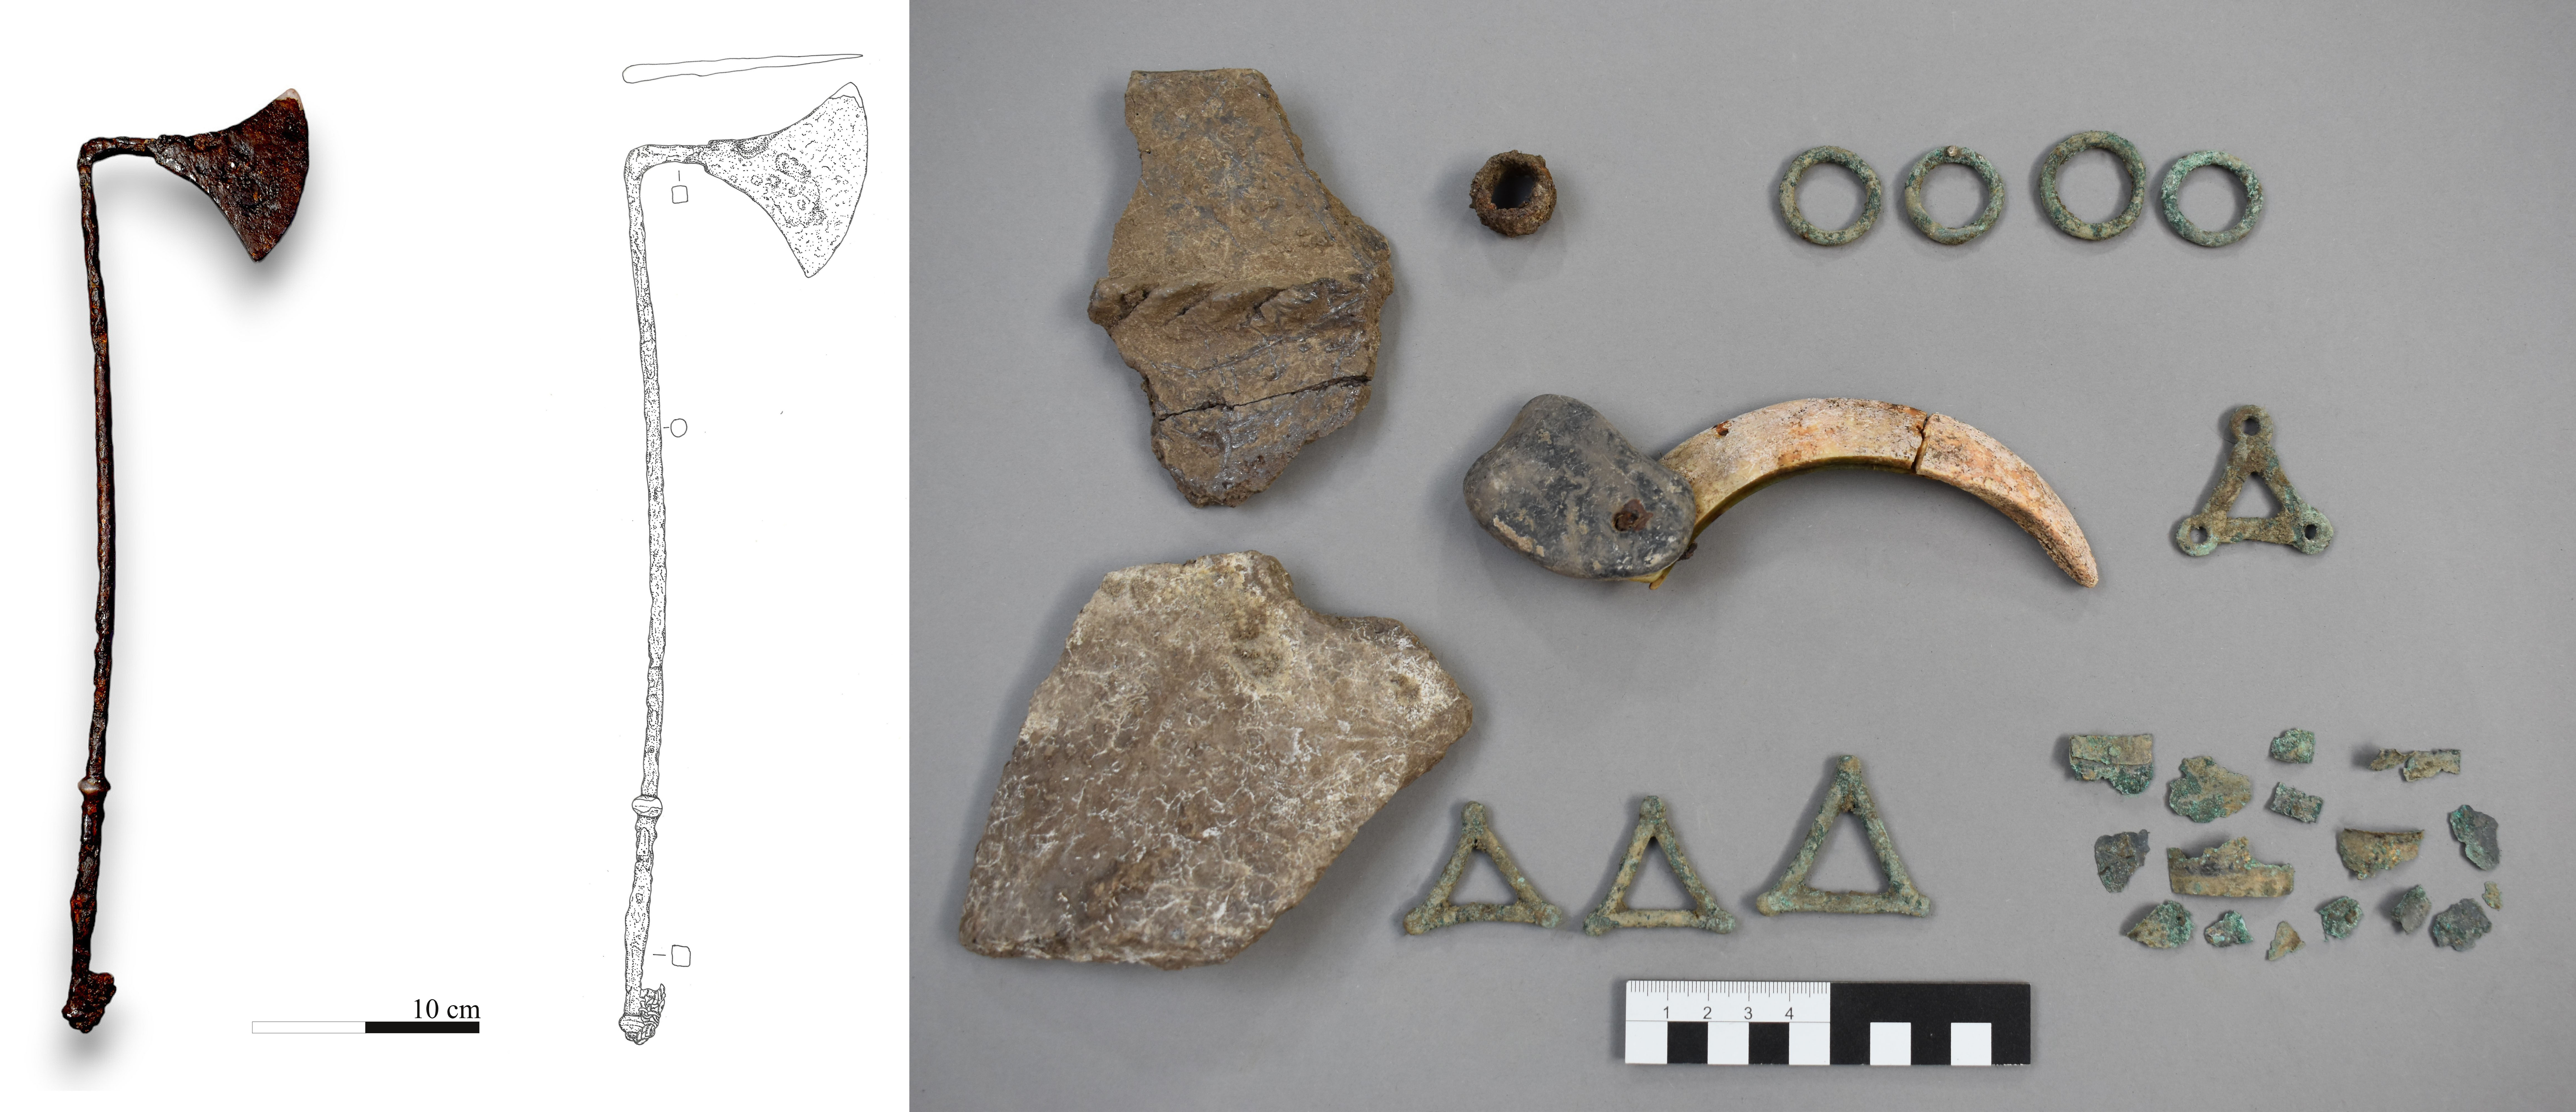 Ganzmetall-Ritualbeil und Amulettensemble aus einem frühlatènezeitlichen Grab in Walpersdorf 